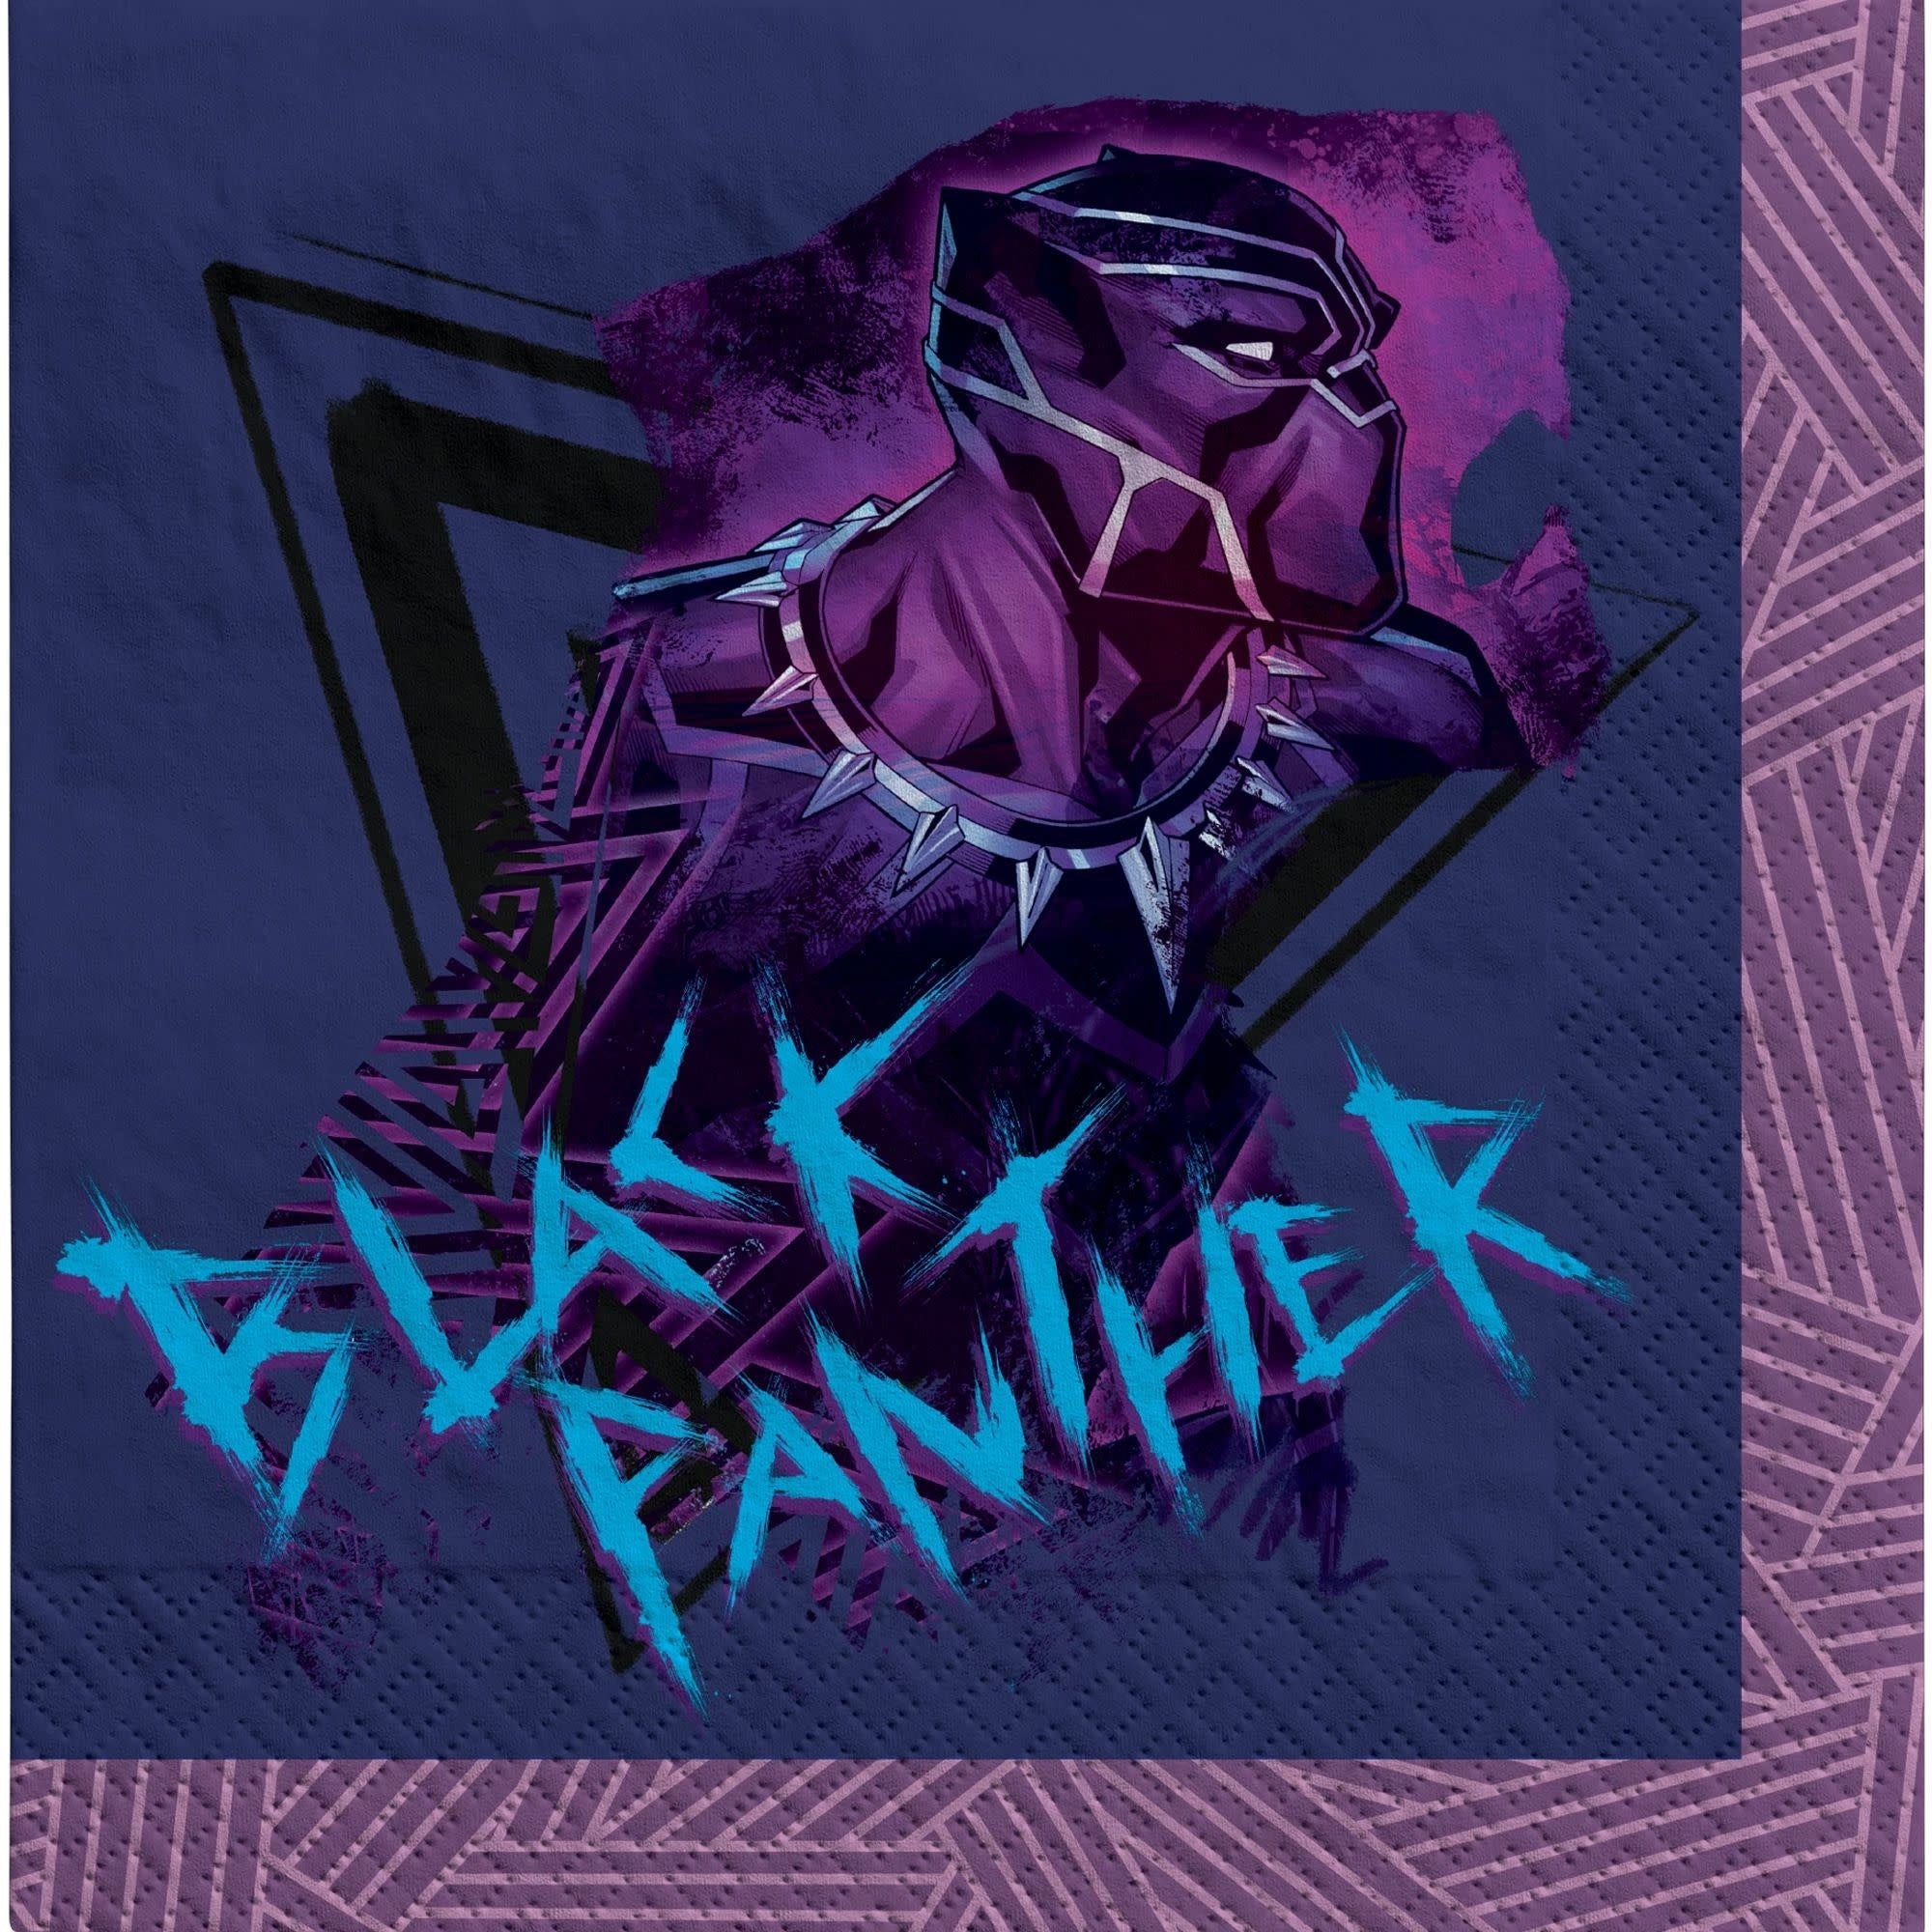 Serviettes De Table (16) - Black Panther Party Shop